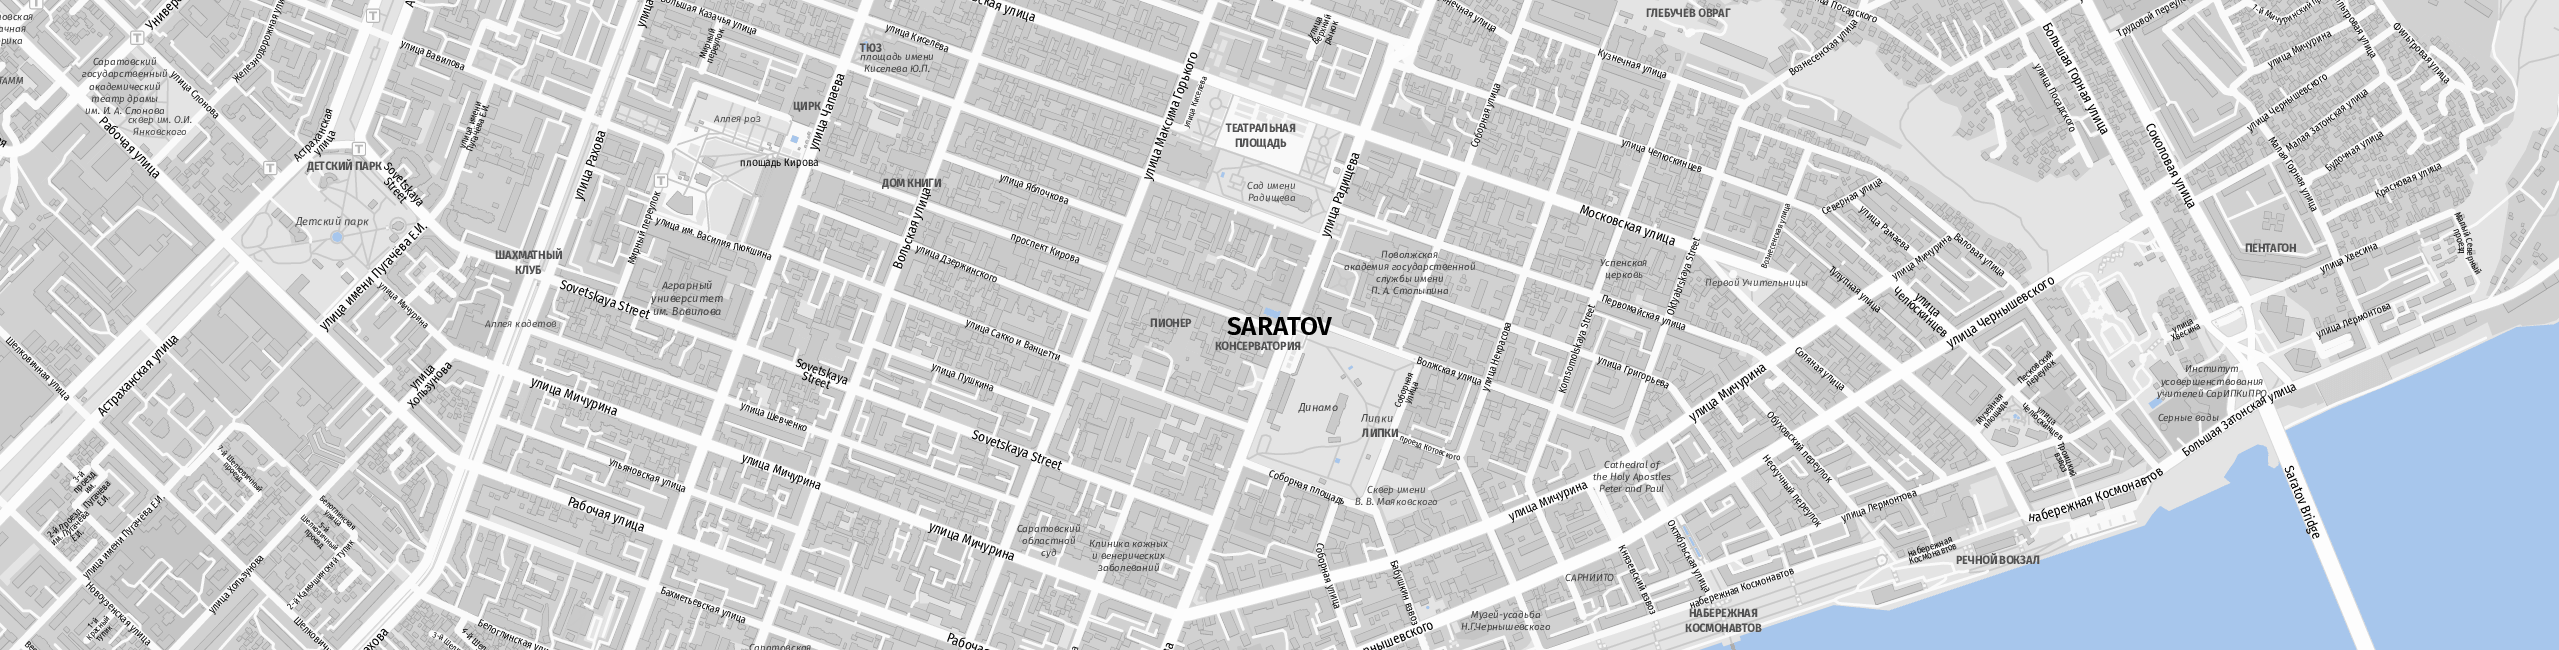 Stadtplan Saratow zum Downloaden.